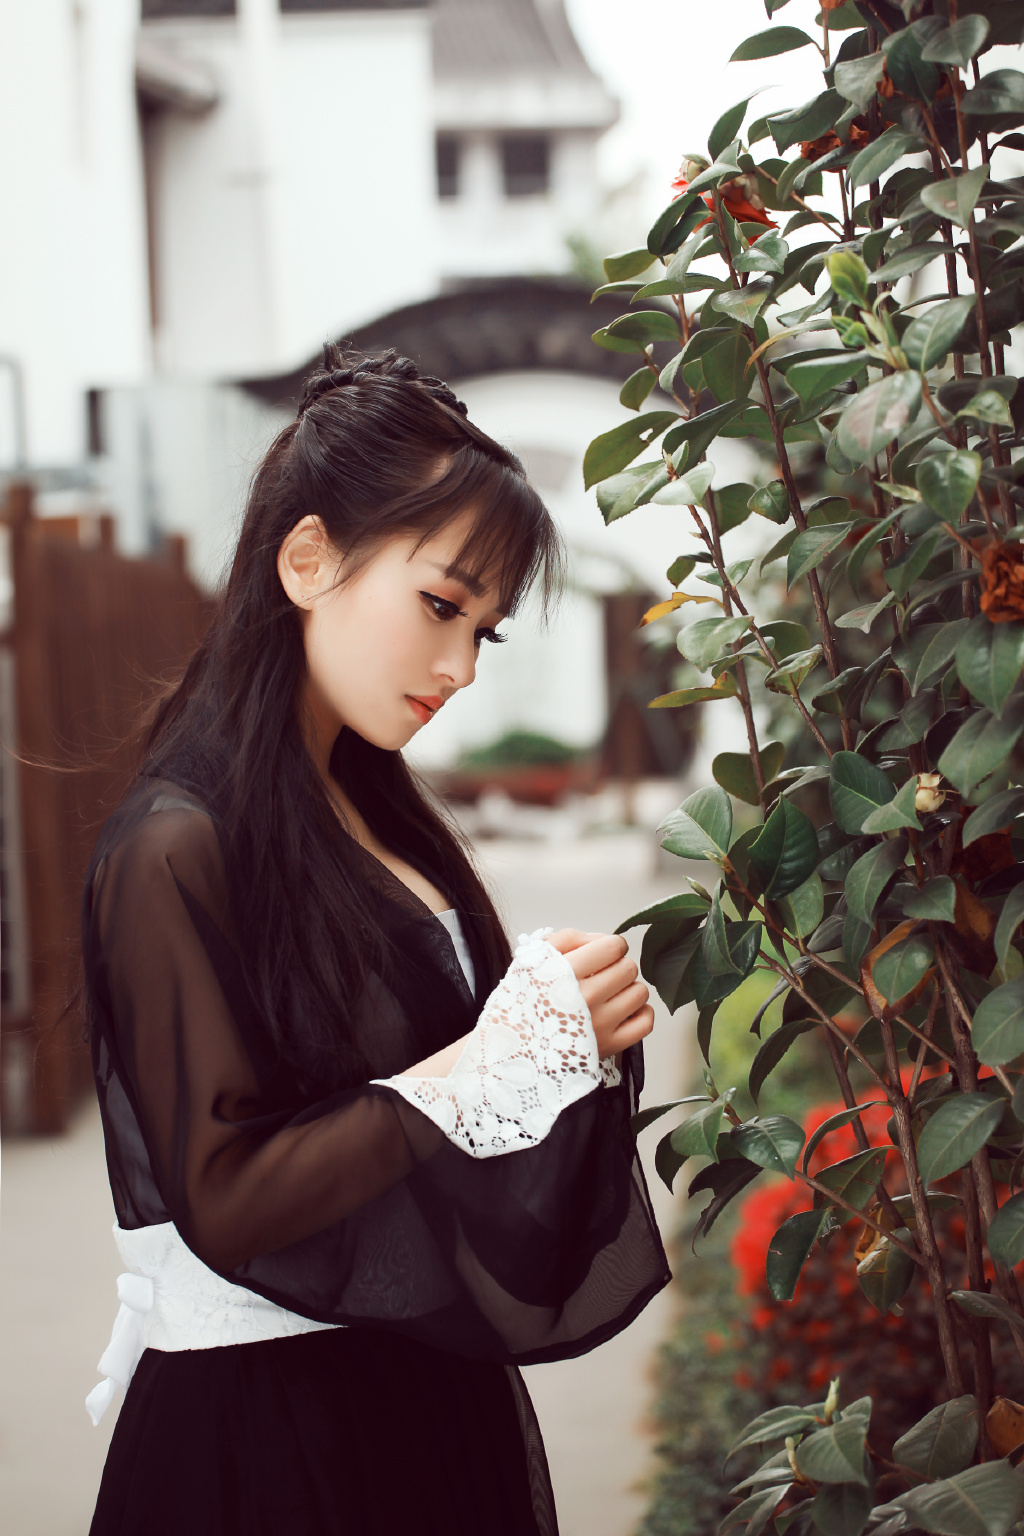 刘海美女百变古装造型最大胆的西西44rt图片